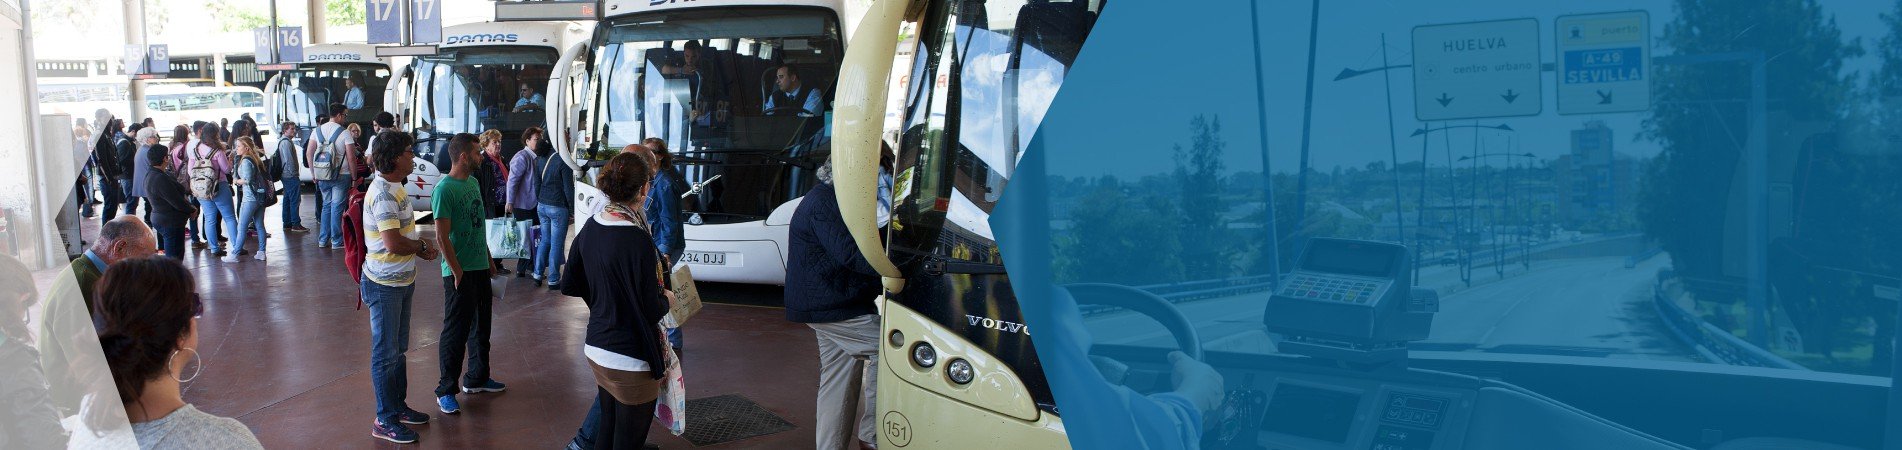 Autobuses propulsados con hidrógeno cubrirán las líneas interurbanas de media Andalucía en 2025